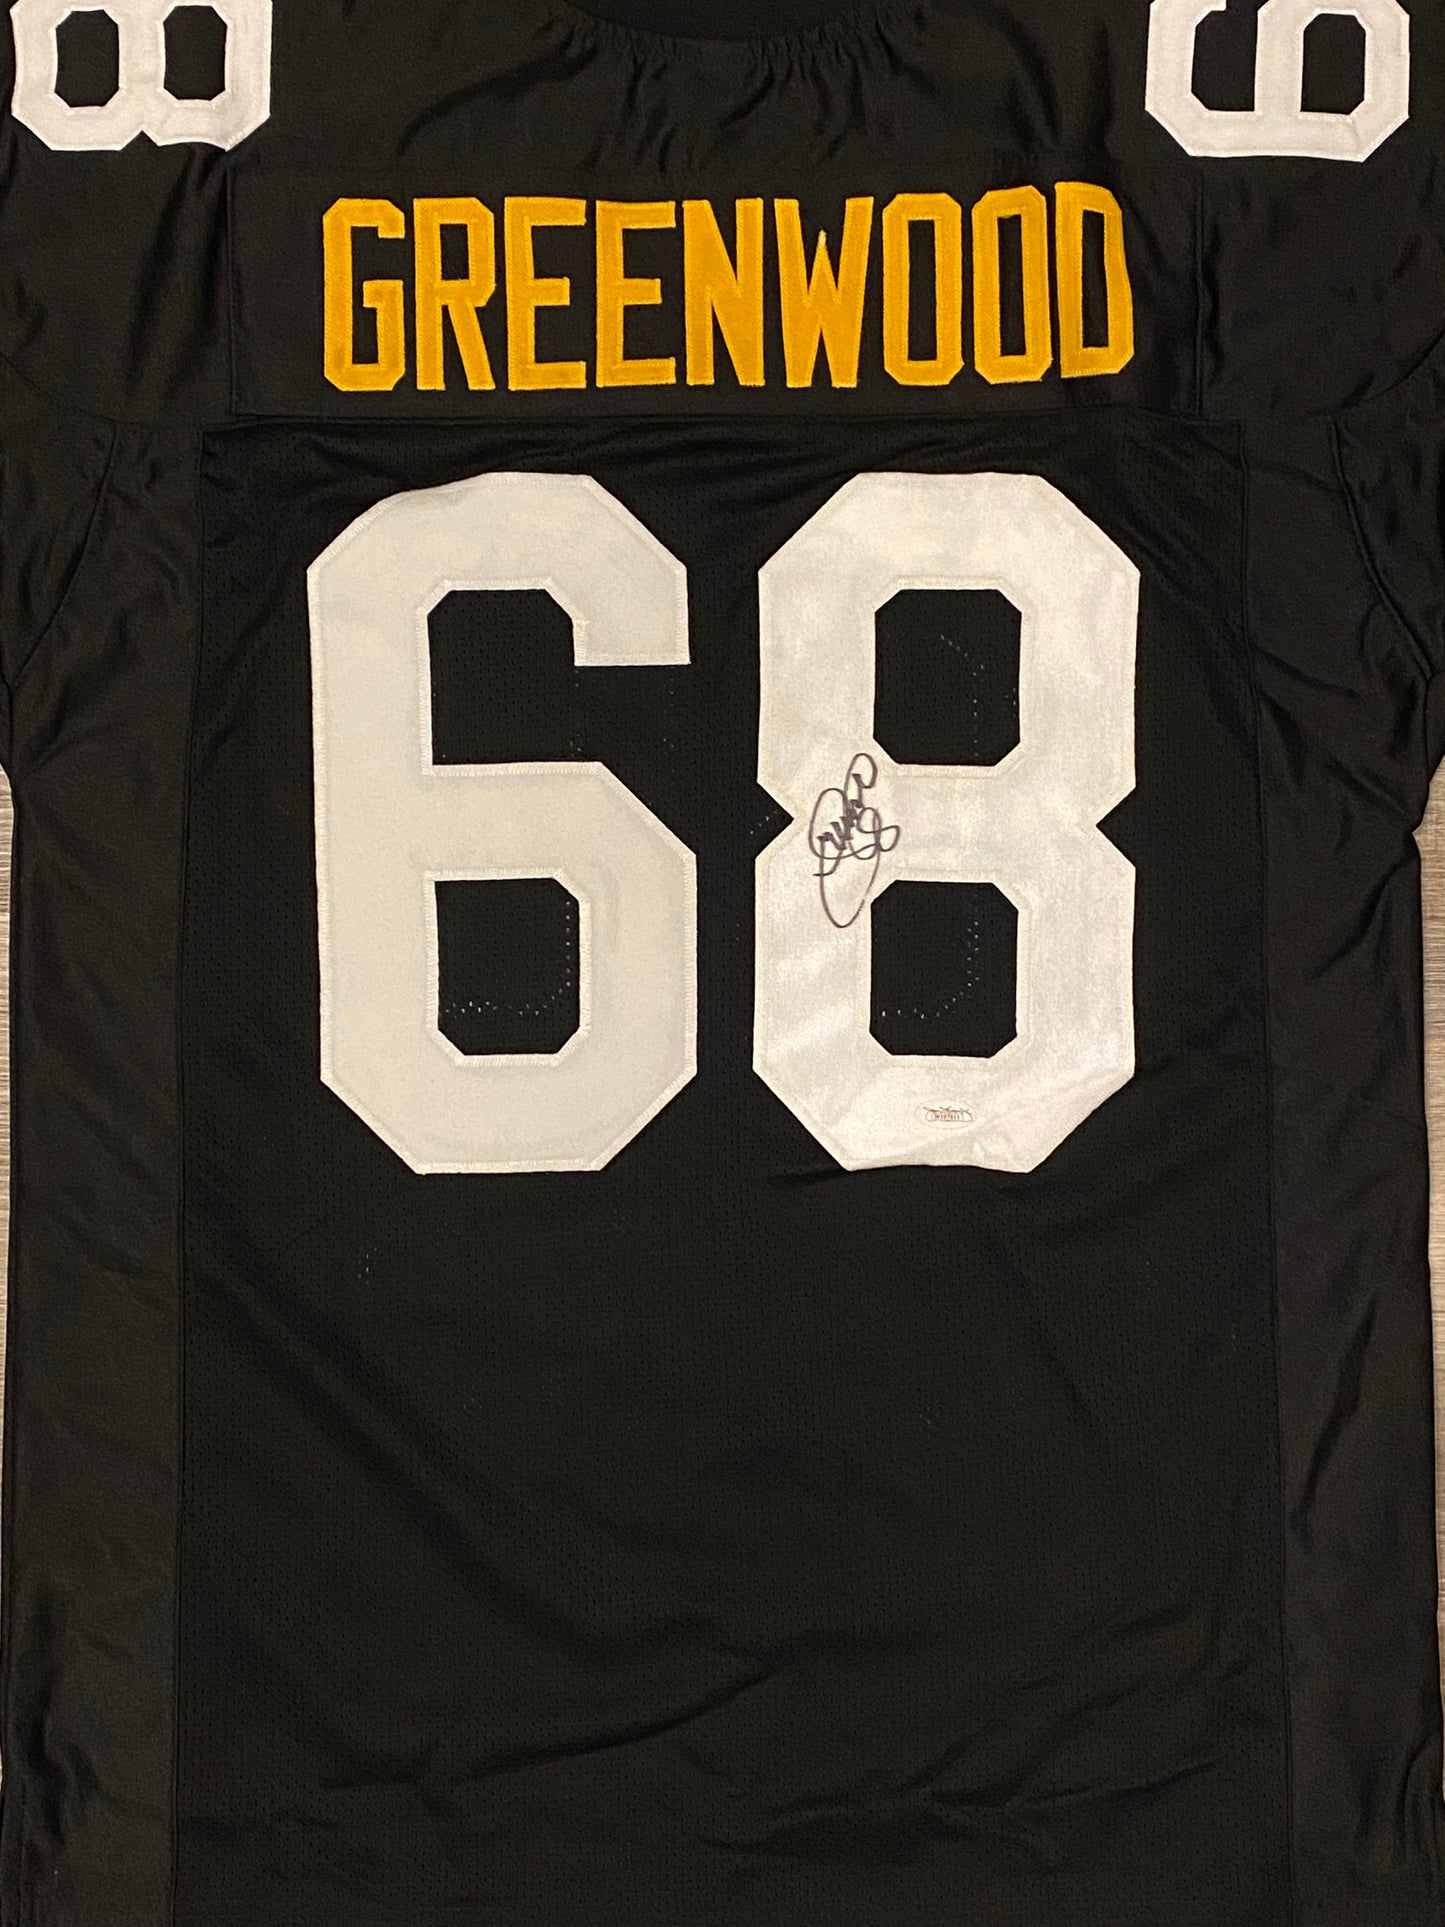 L.C. Greenwood signed custom jersey (JSA COA)